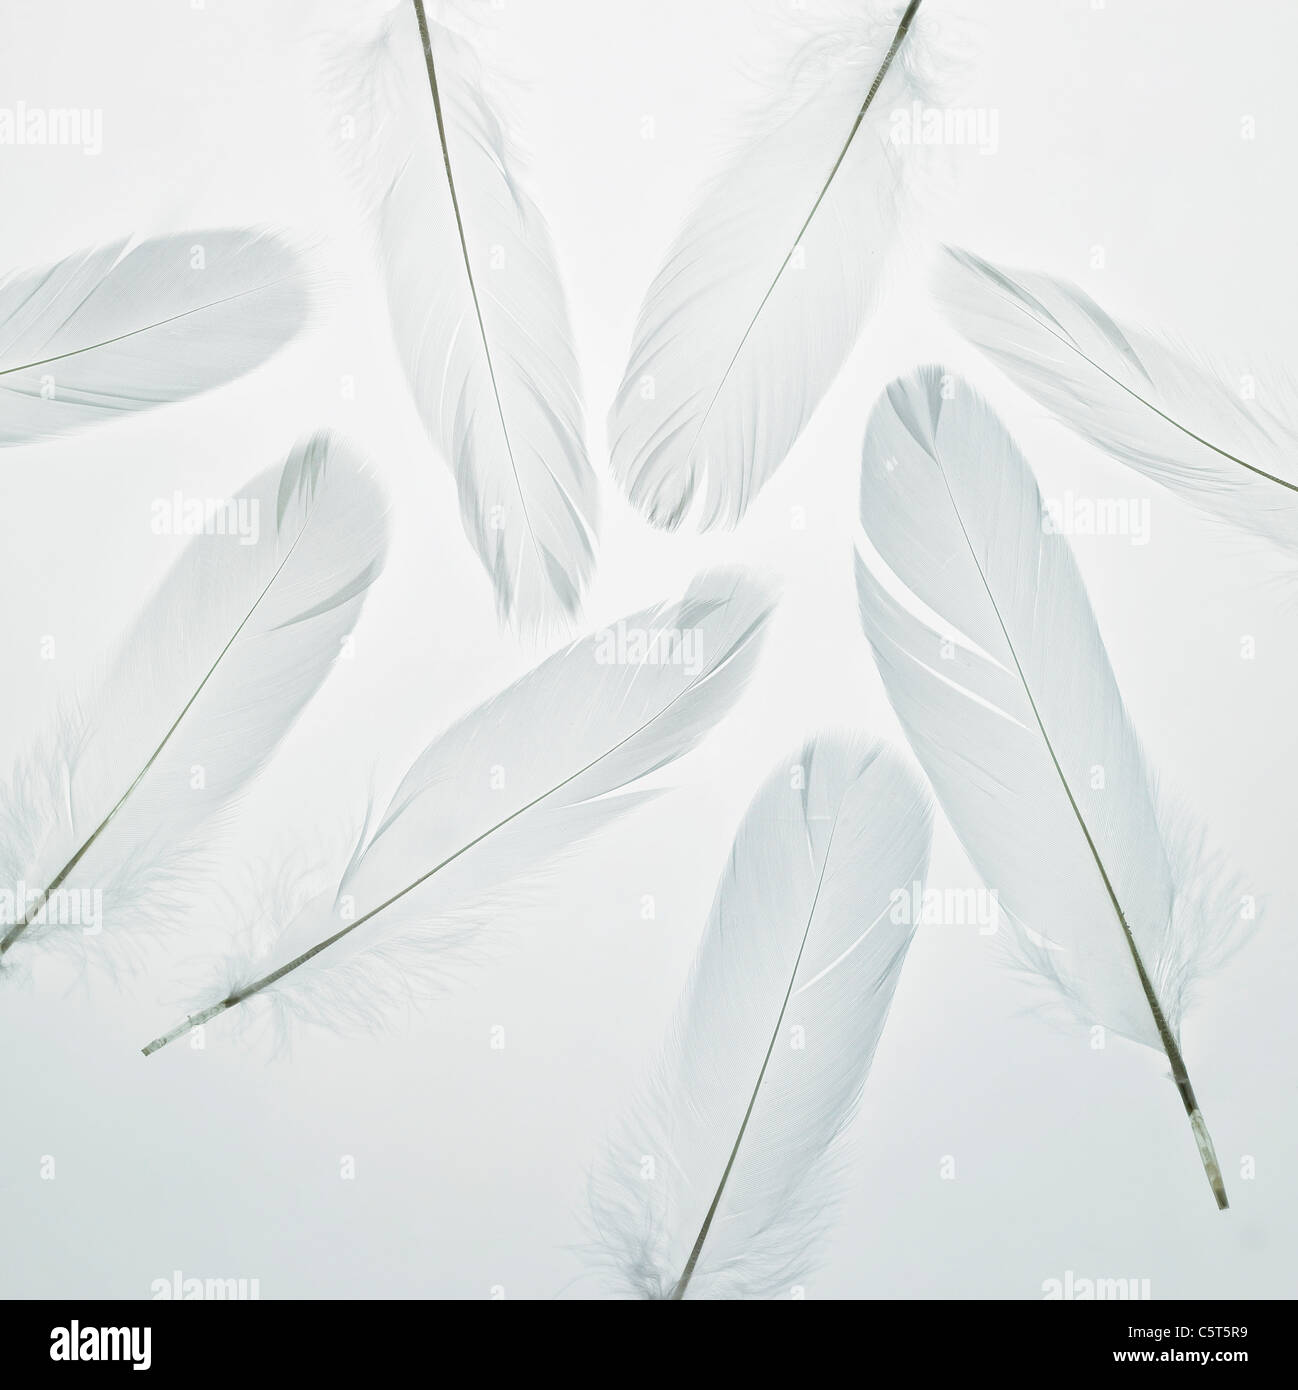 White feathers Stock Photo